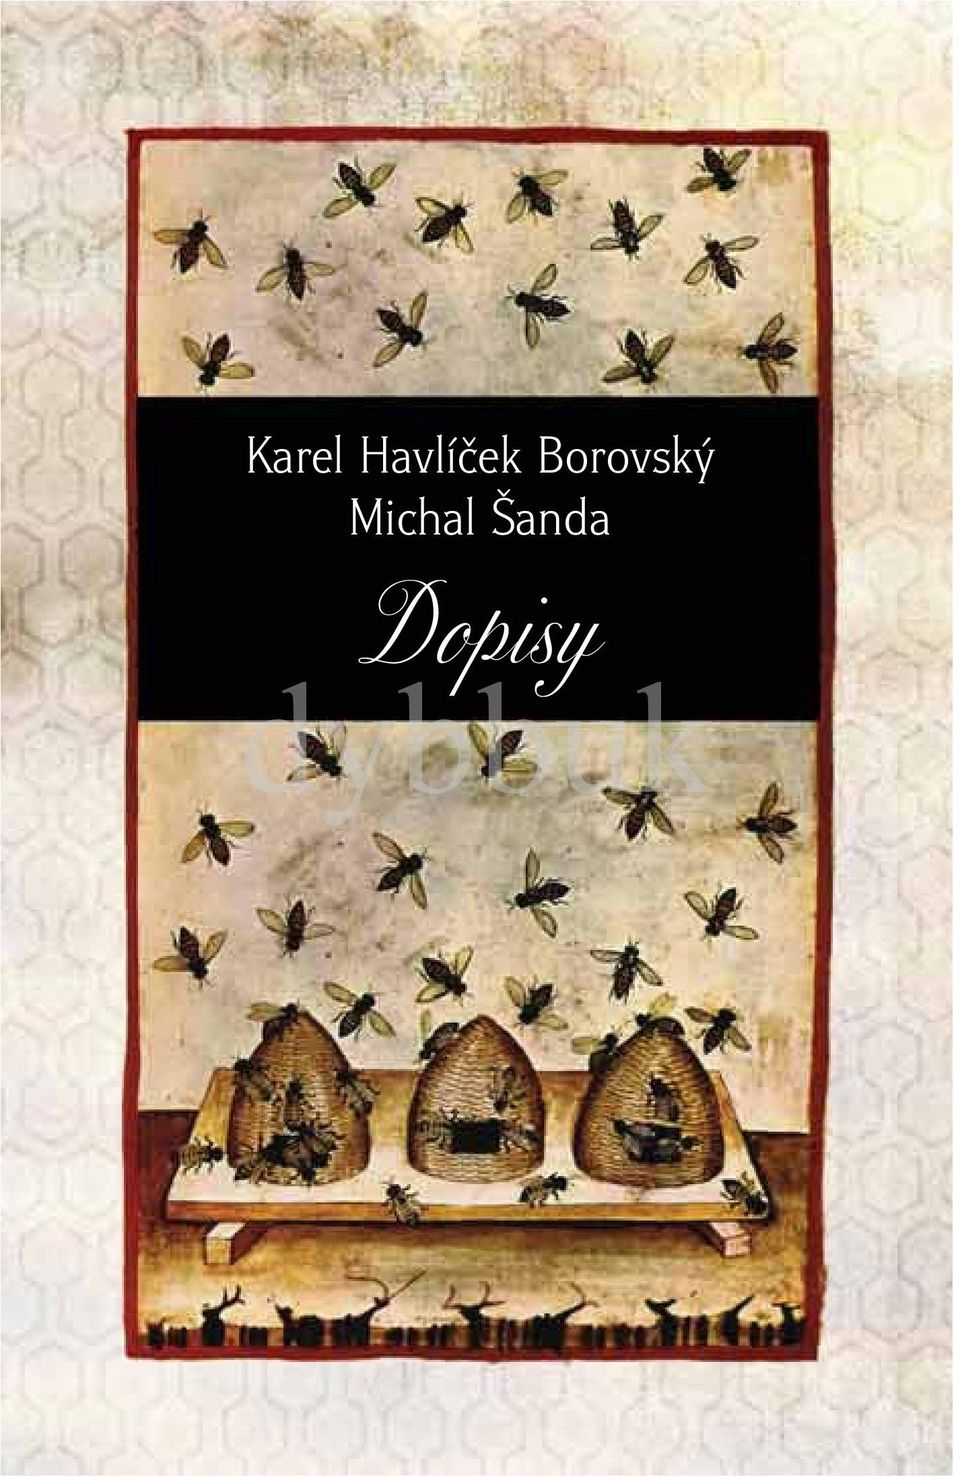 Karel Havlíček Borovský. Dopisy. dybbuk. Michal Šanda - PDF Free Download